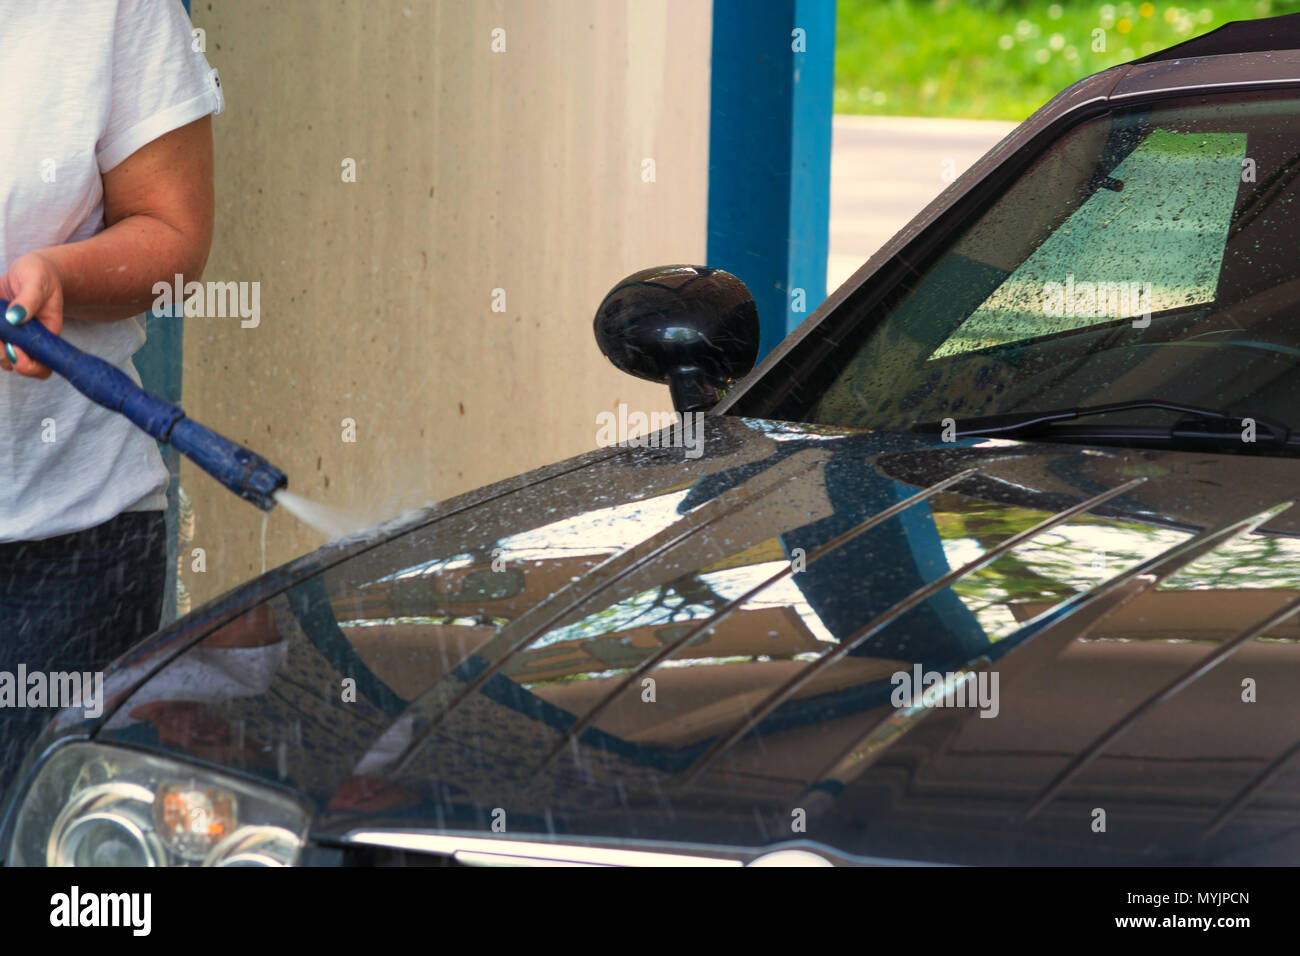 Auto sauber machen mit einem  Hochdruckreiniger. Stock Photo